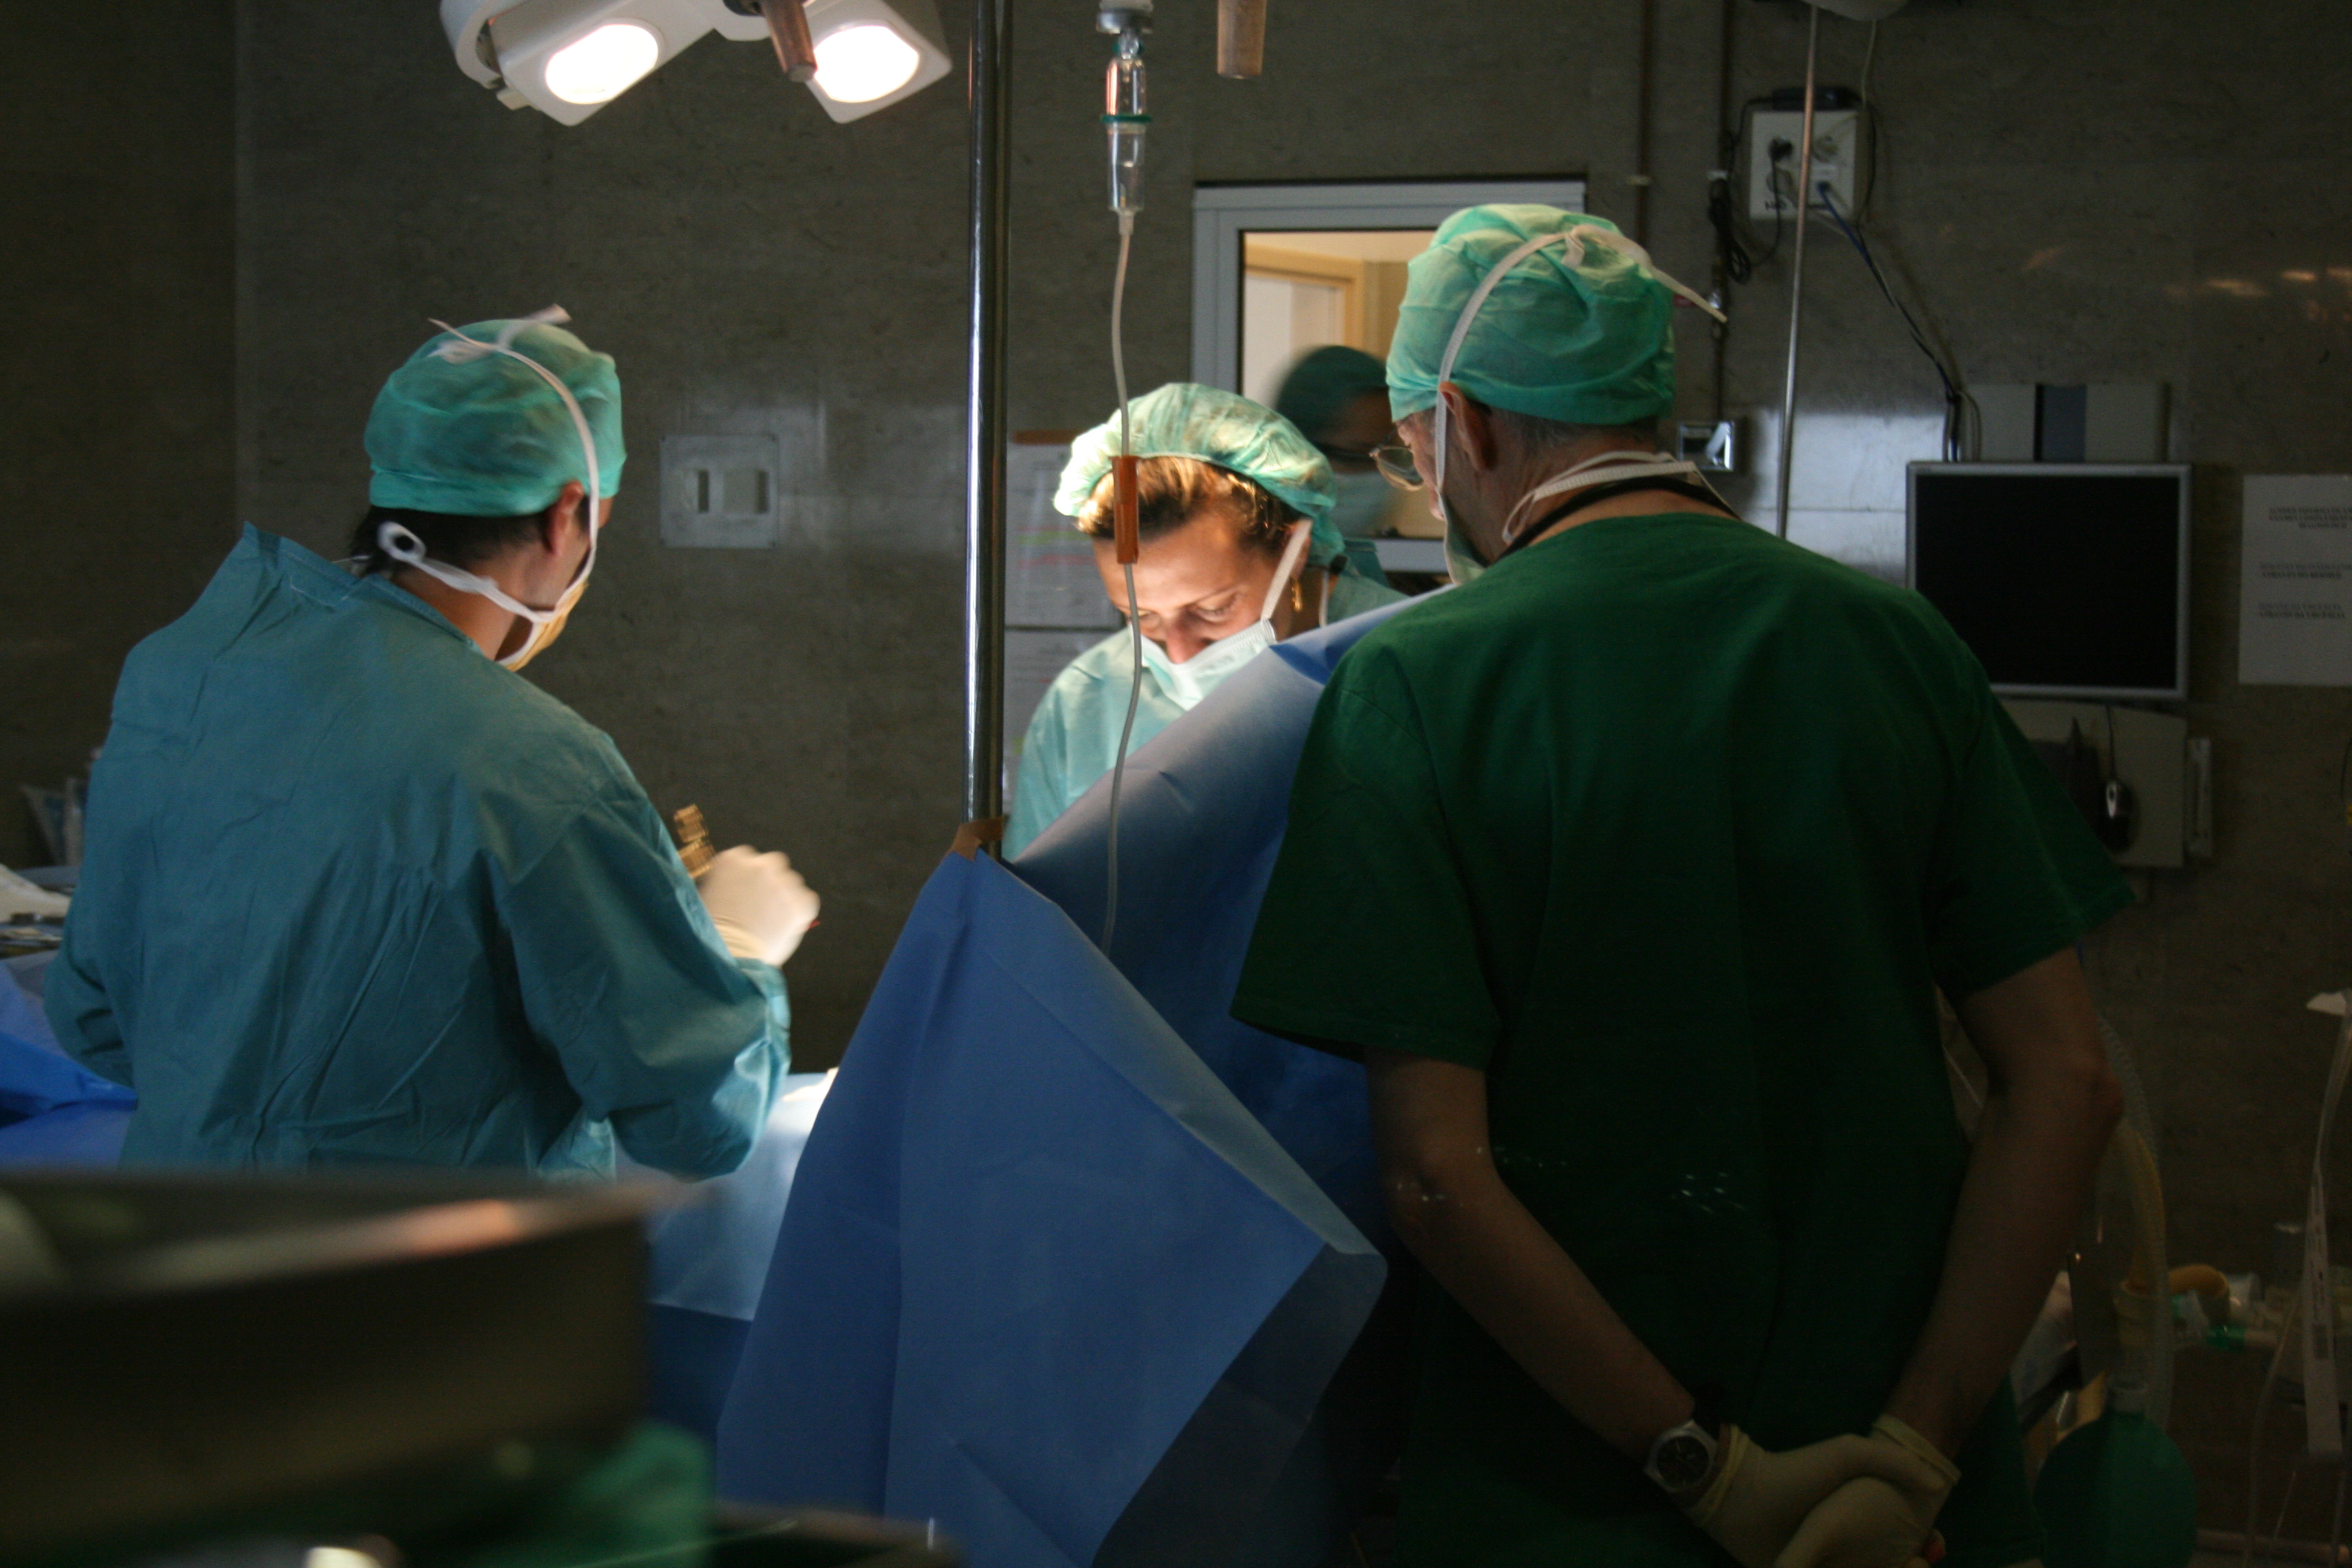  Ambulatório vai resolver cirurgias em lista de espera 